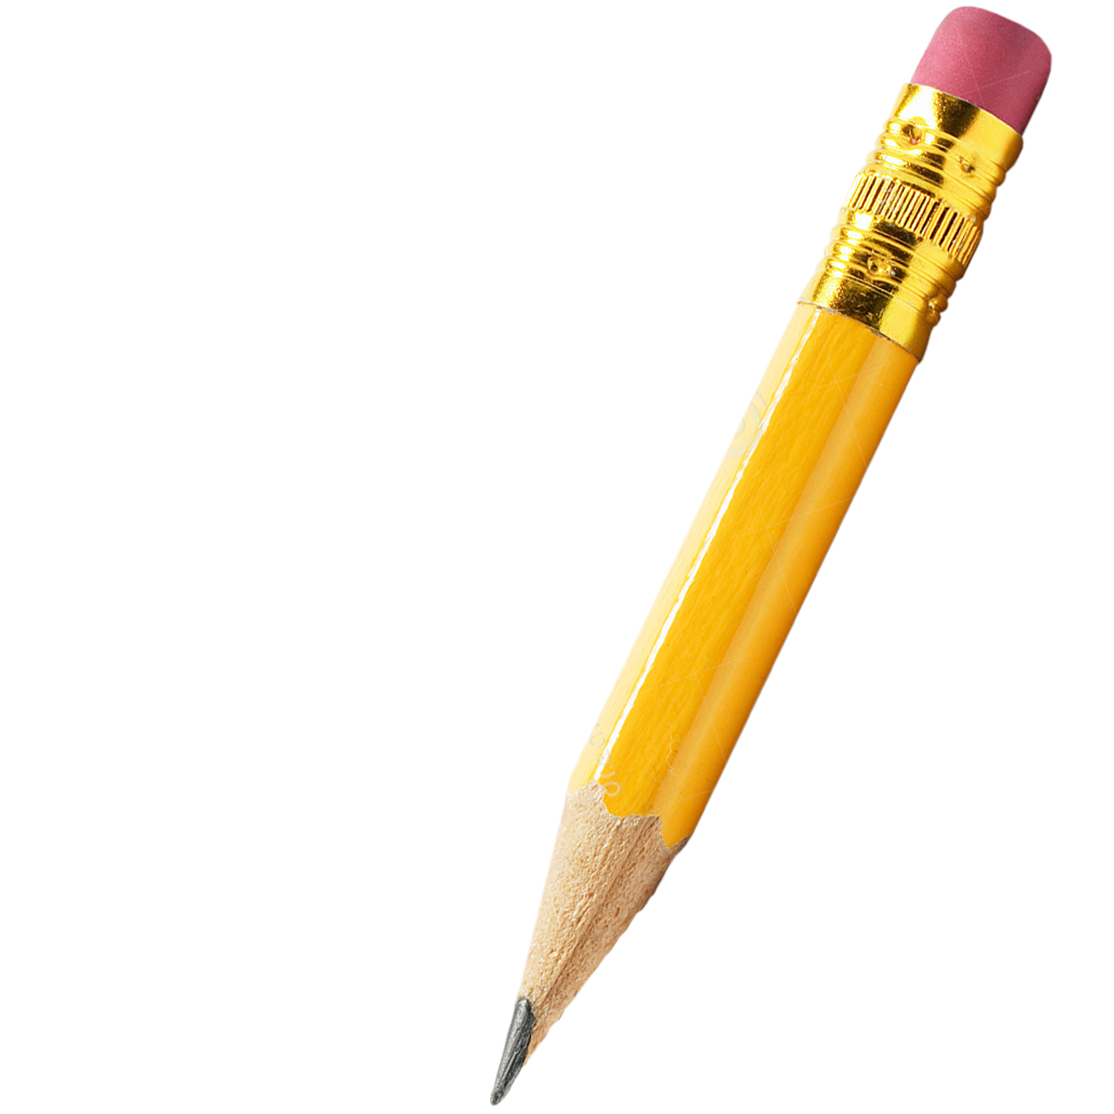 Pencil HD PNG - 120155